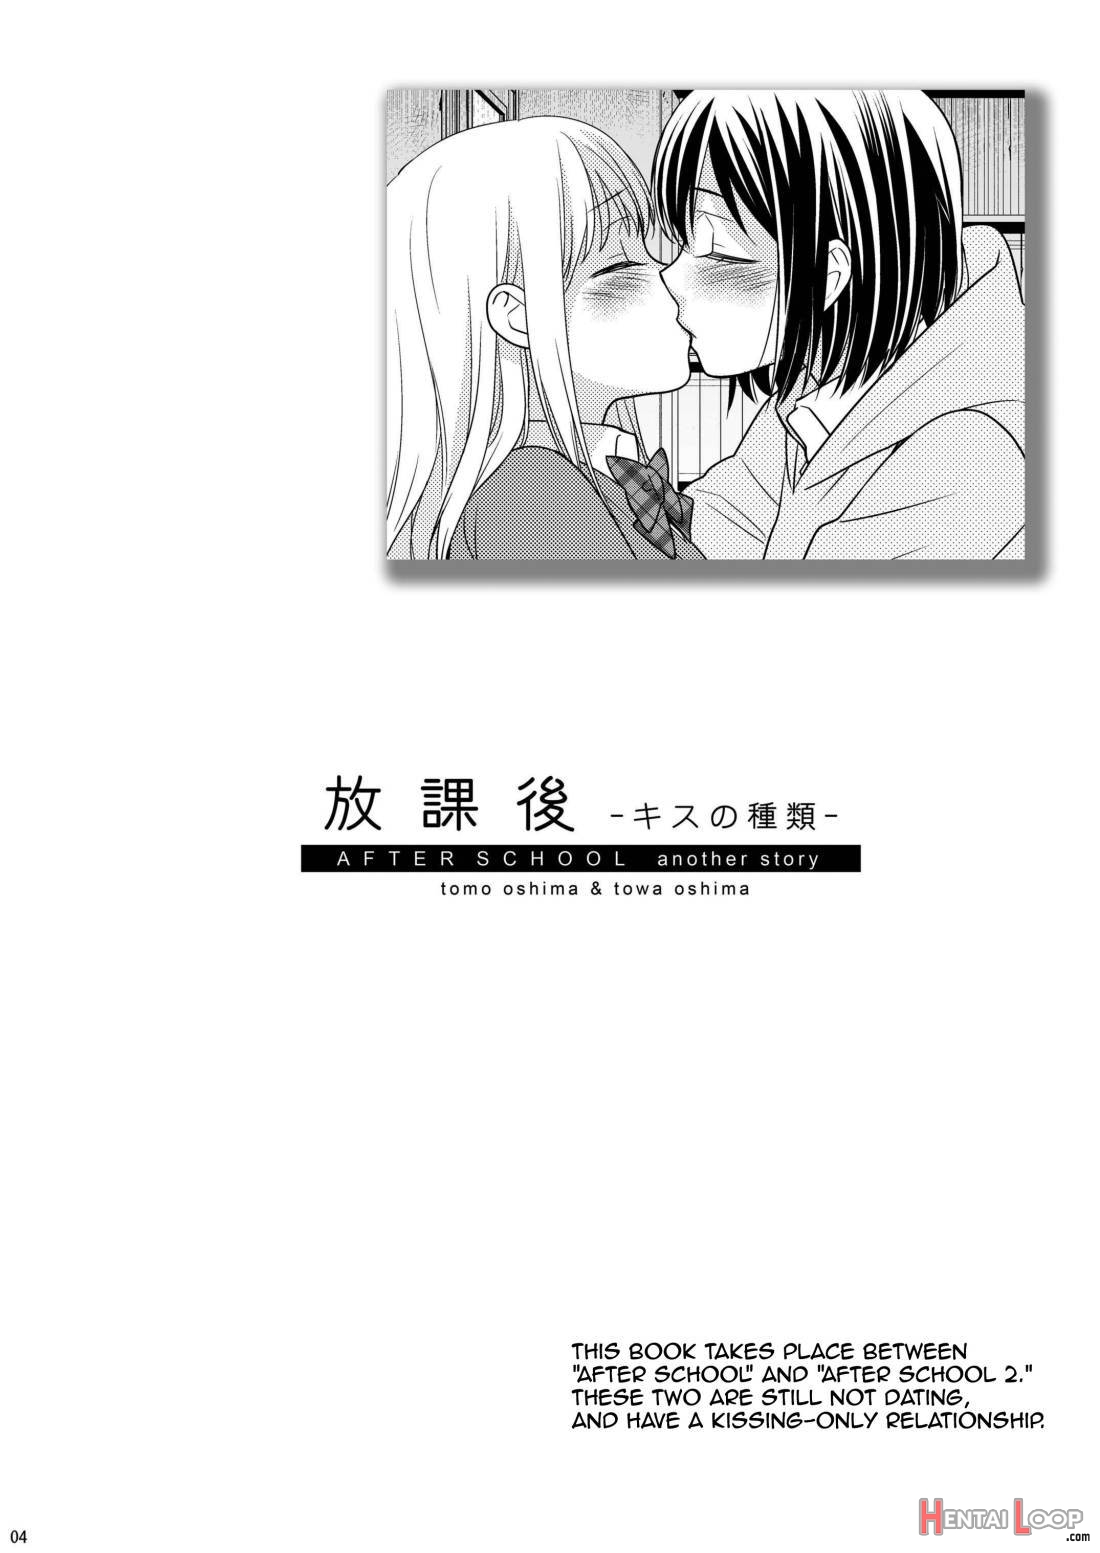 Houkago ~Kiss no Shurui~ page 2